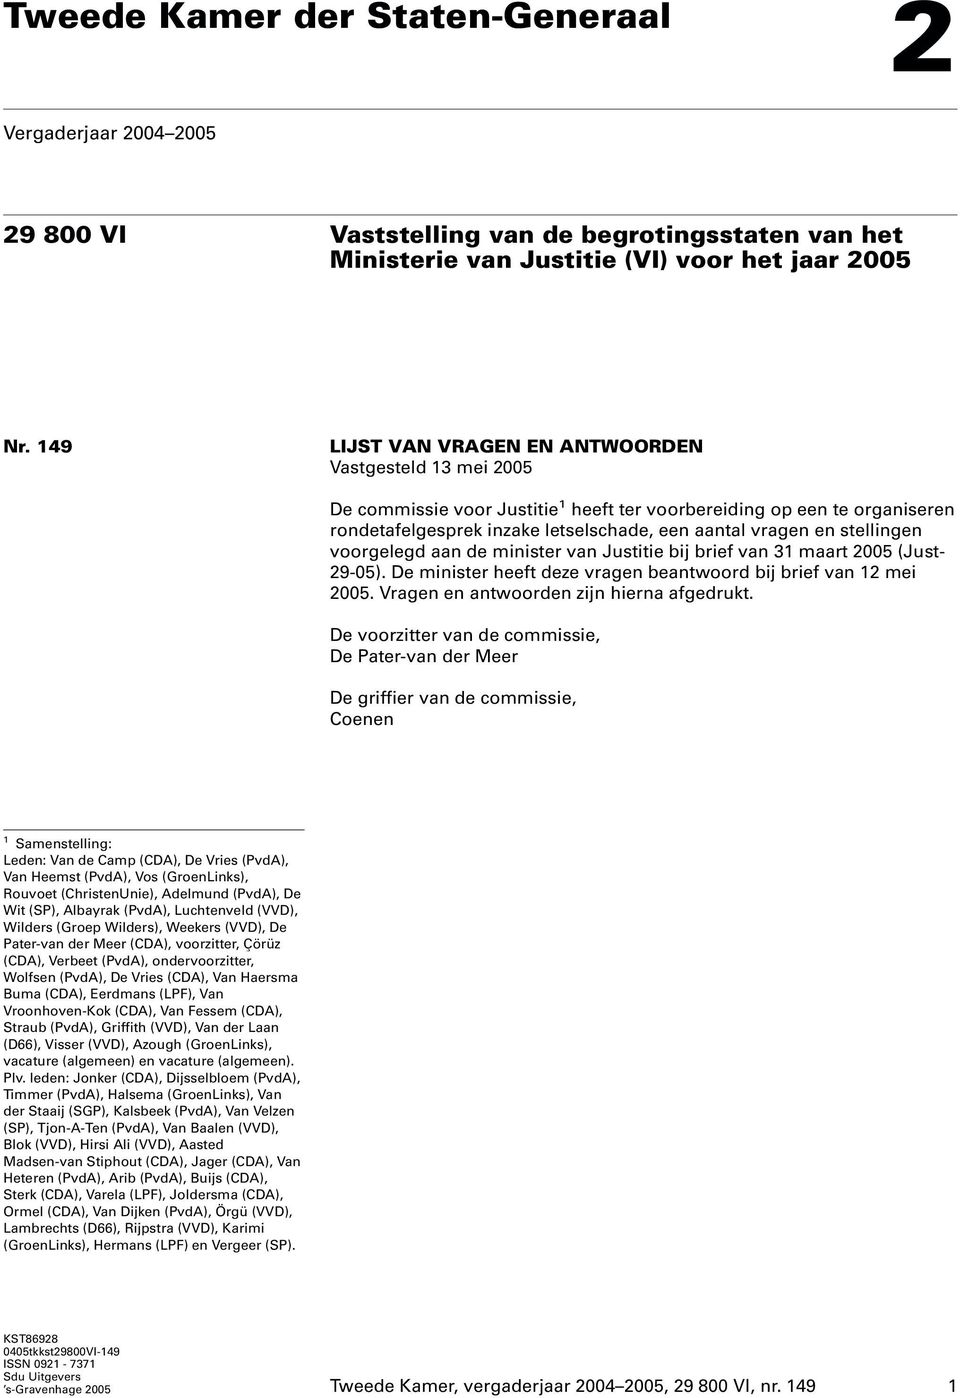 stellingen voorgelegd aan de minister van Justitie bij brief van 31 maart 2005 (Just- 29-05). De minister heeft deze vragen beantwoord bij brief van 12 mei 2005.